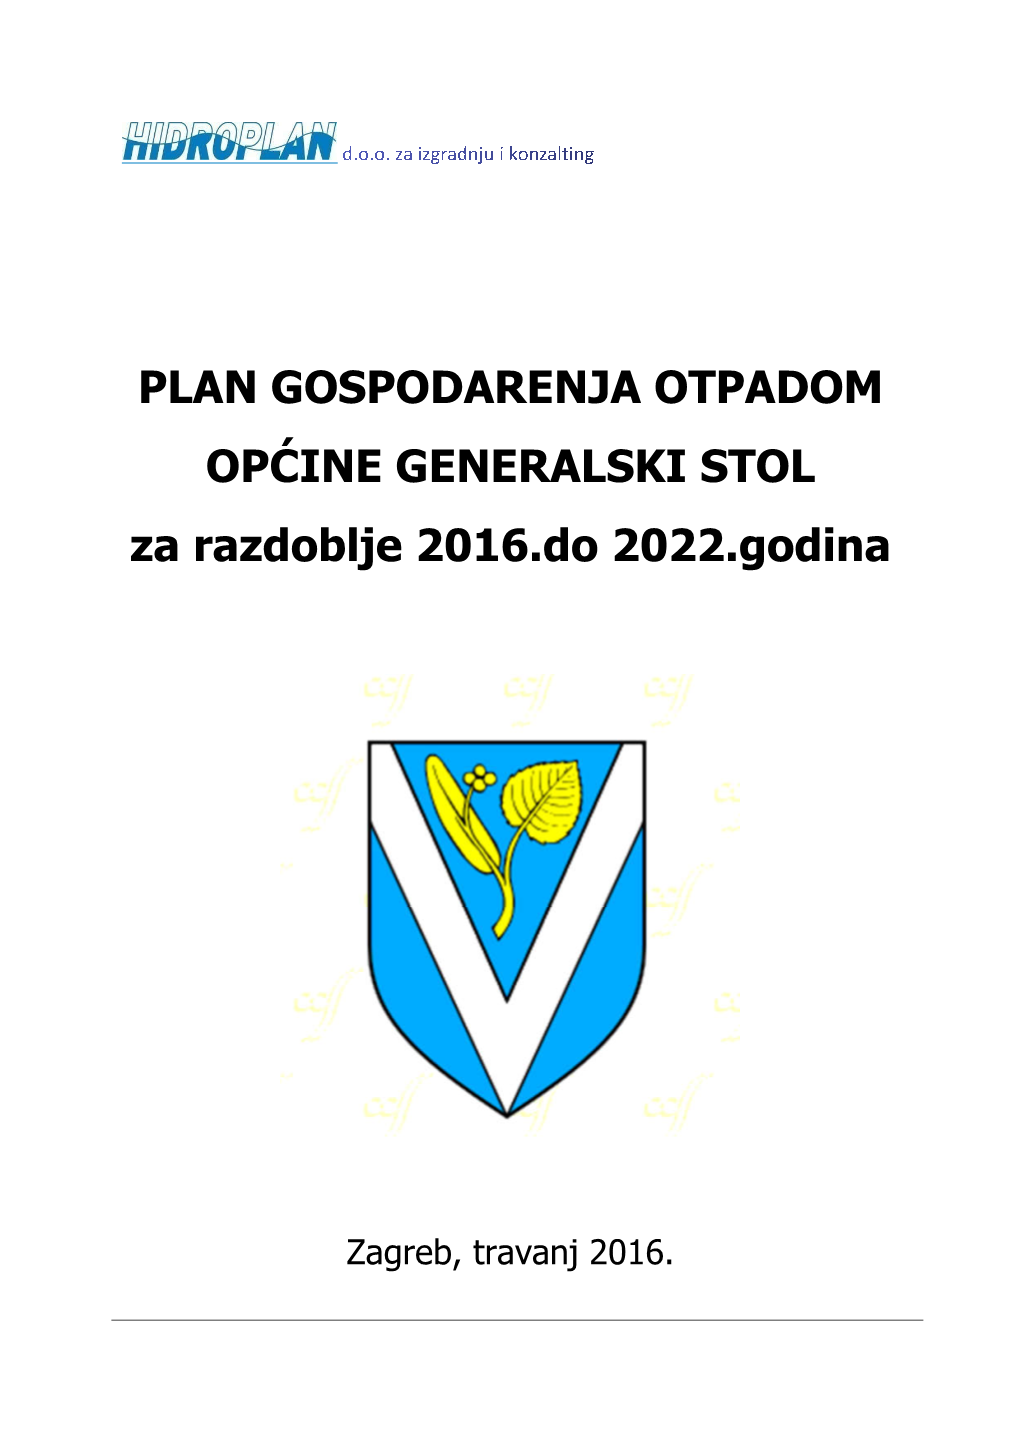 PLAN GOSPODARENJA OTPADOM OPĆINE GENERALSKI STOL Za Razdoblje 2016.Do 2022.Godina